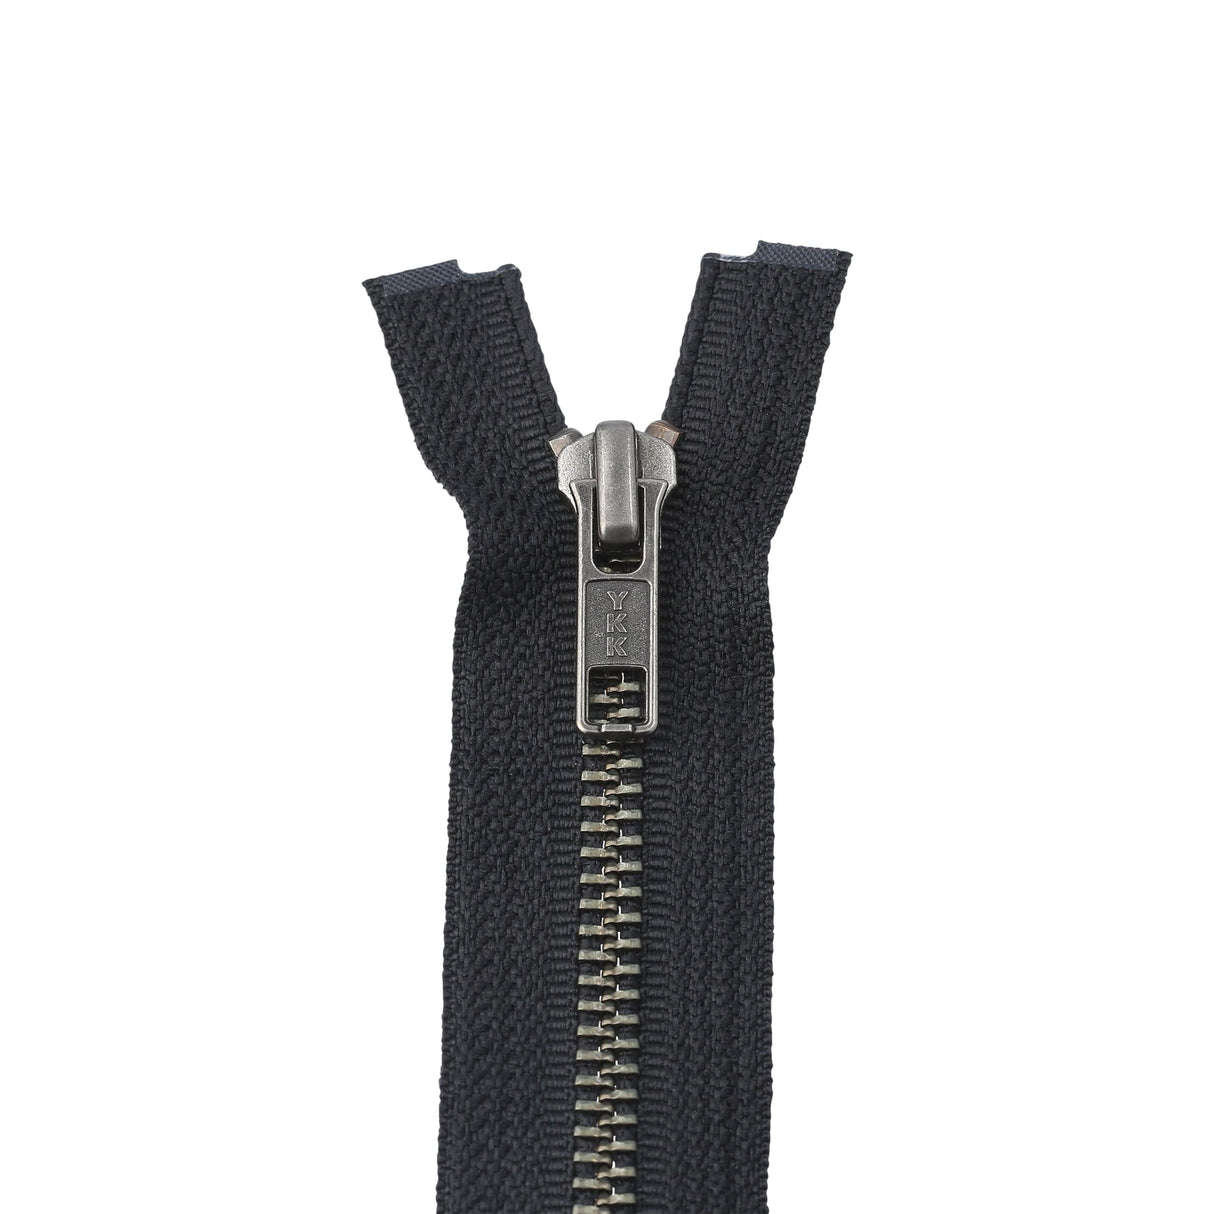 #5 Metal, Black, 30 YKK Separating Jacket Zipper with Solid Nickel Teeth, #6SN-30-BLK